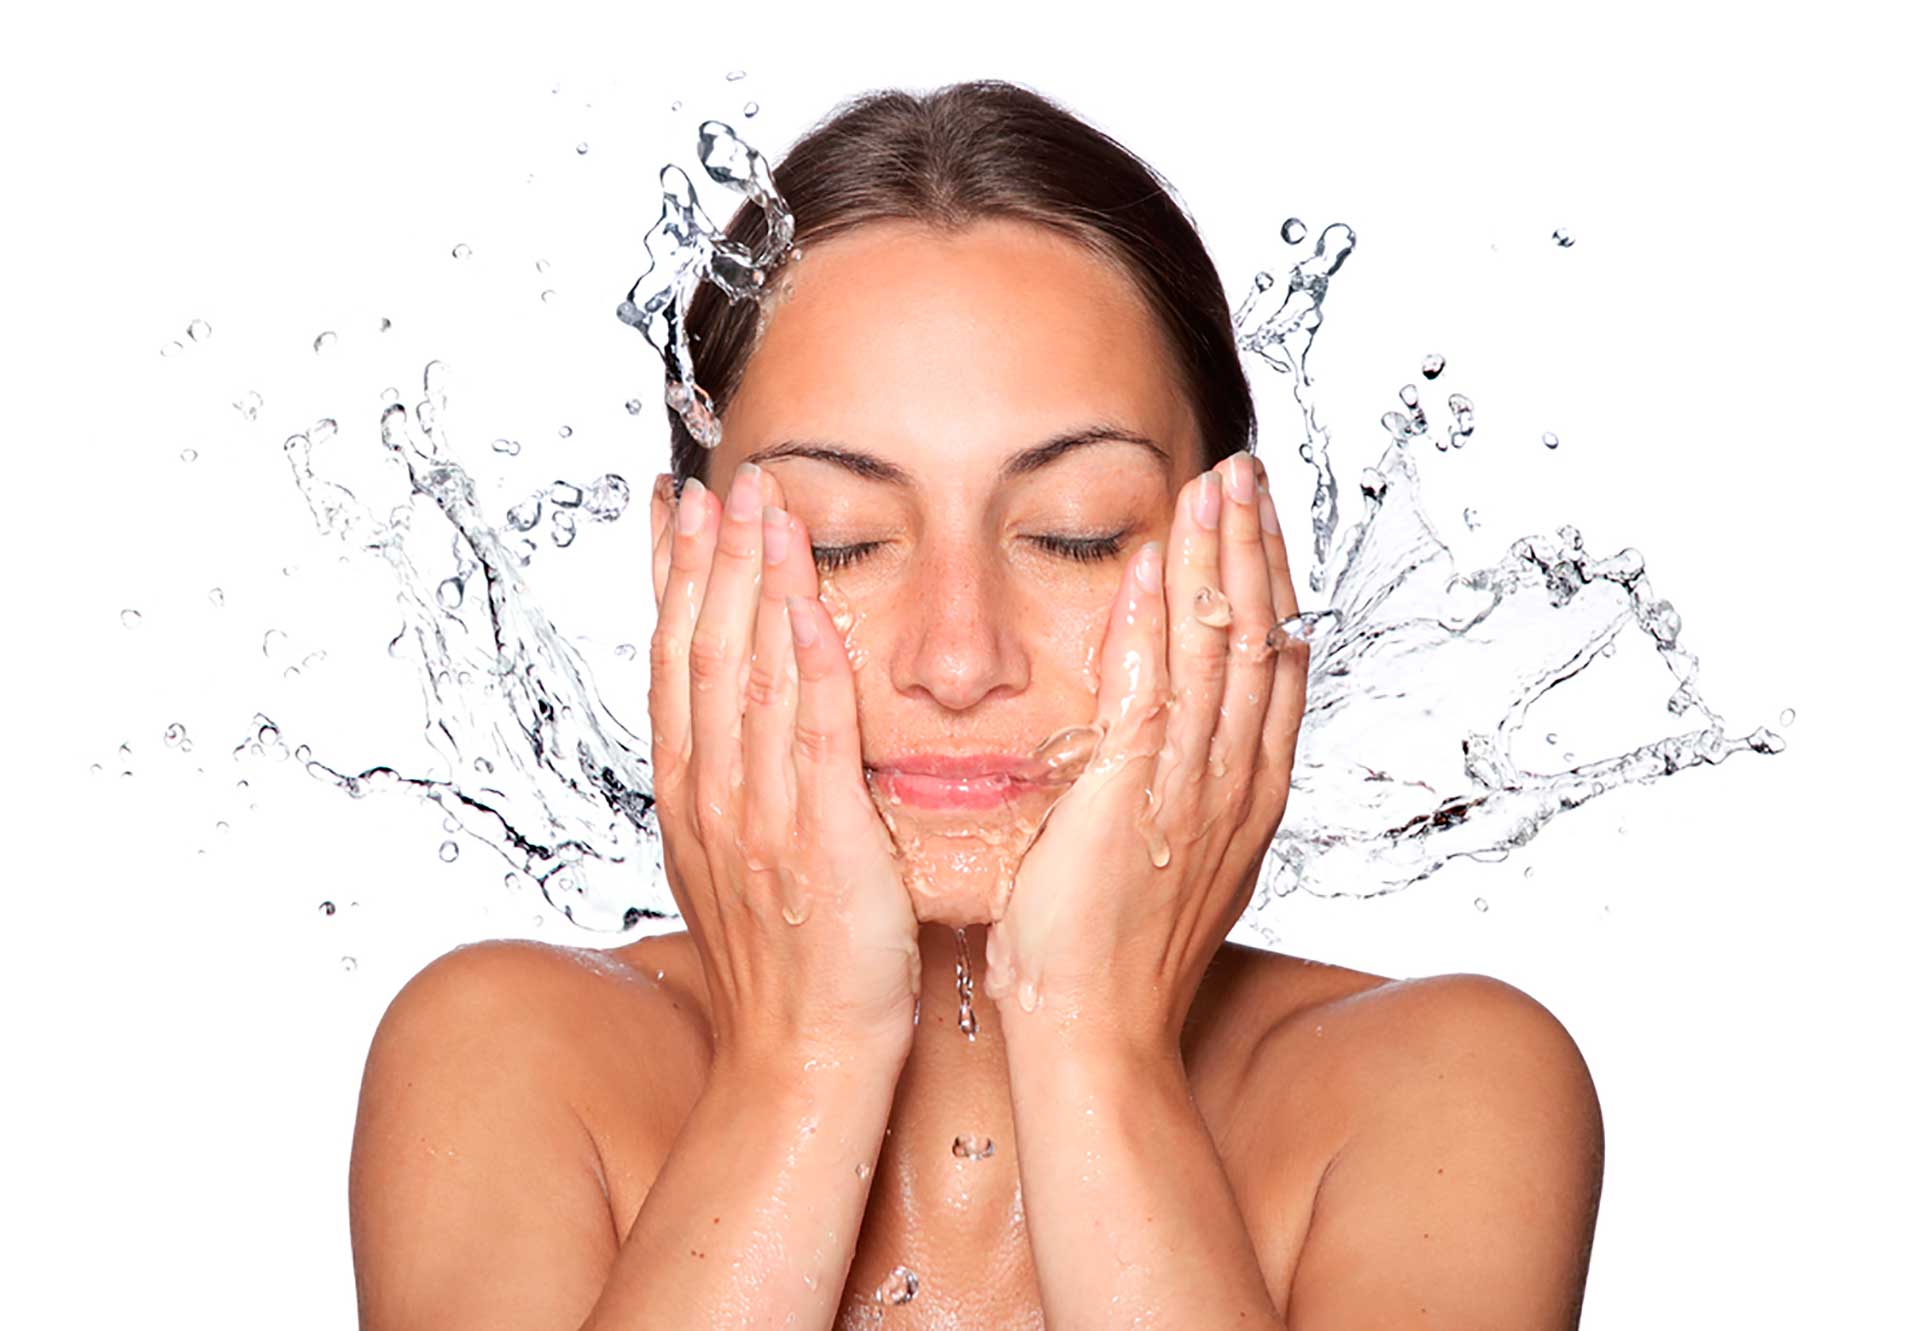 La importancia de la limpieza facial